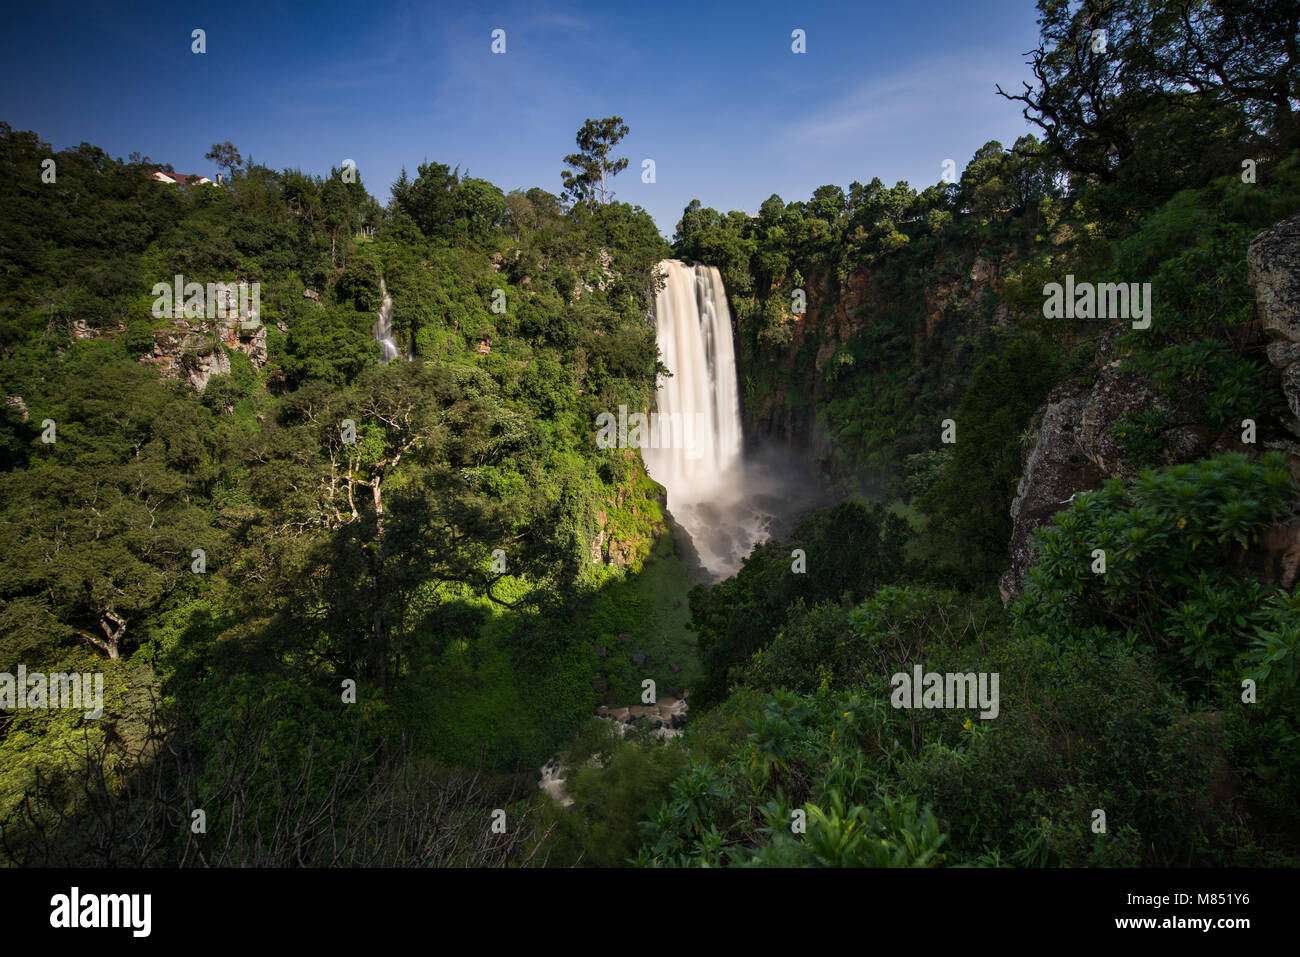 Thomson's fällt Wasserfall in Nyahururu in einer von Bäumen gesäumten Canyon, Kenia, Ostafrika Stockfoto